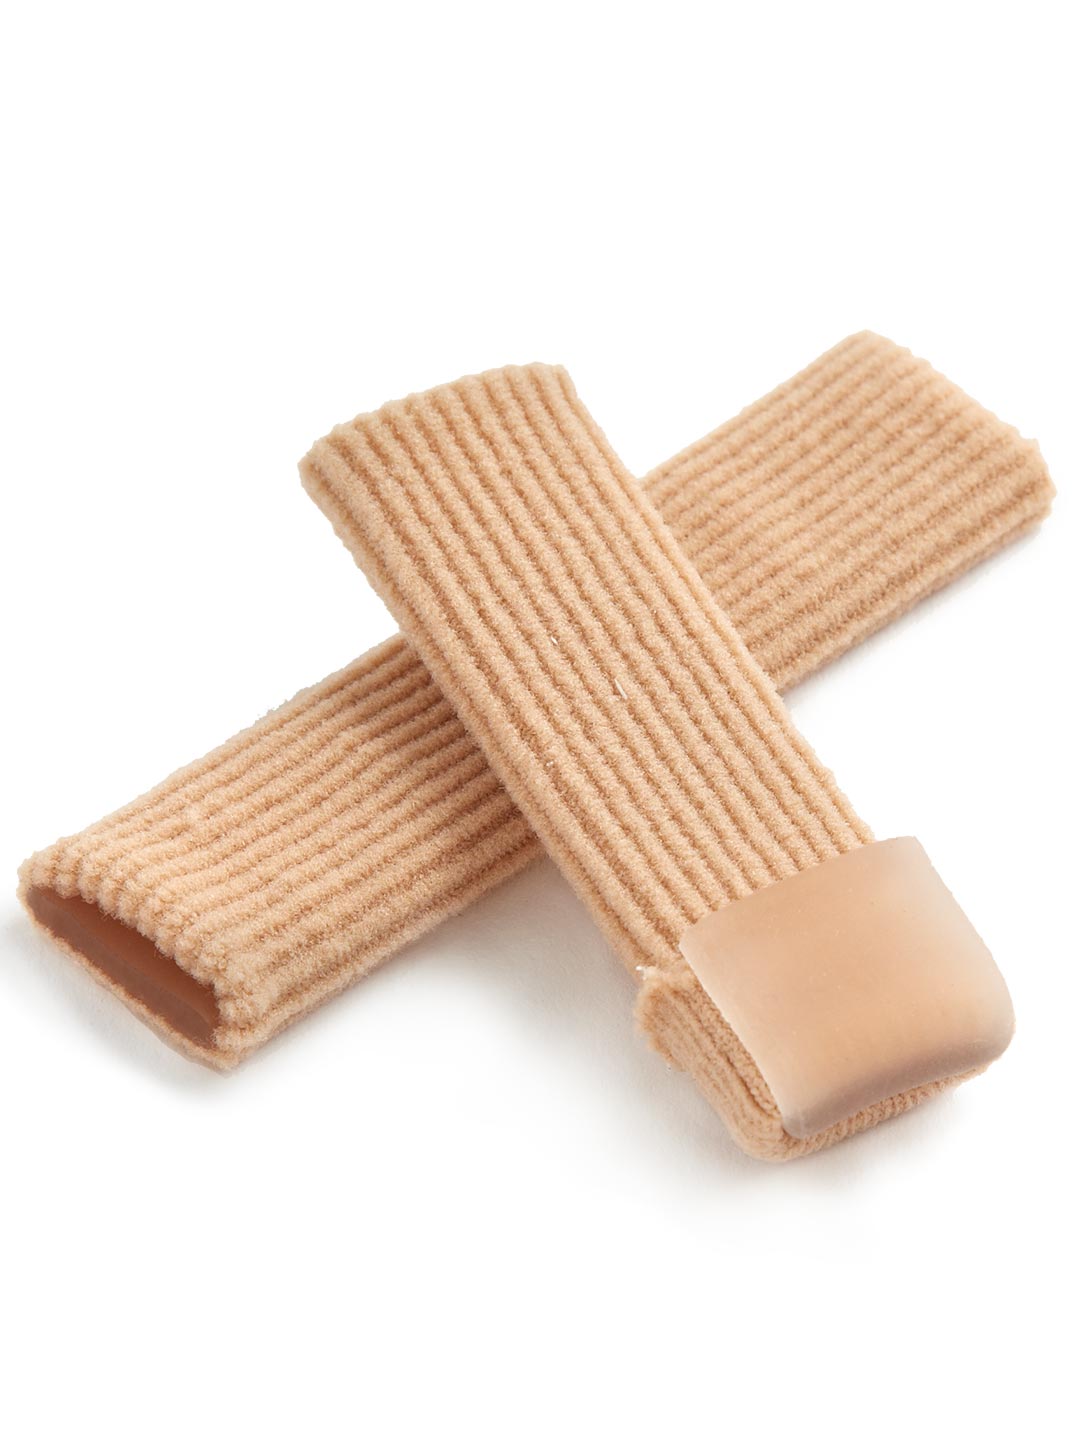 Protetores Jelly Toes® com Forro em Gel e Tecido Elástico-Acessórios-Capezio-Brasil